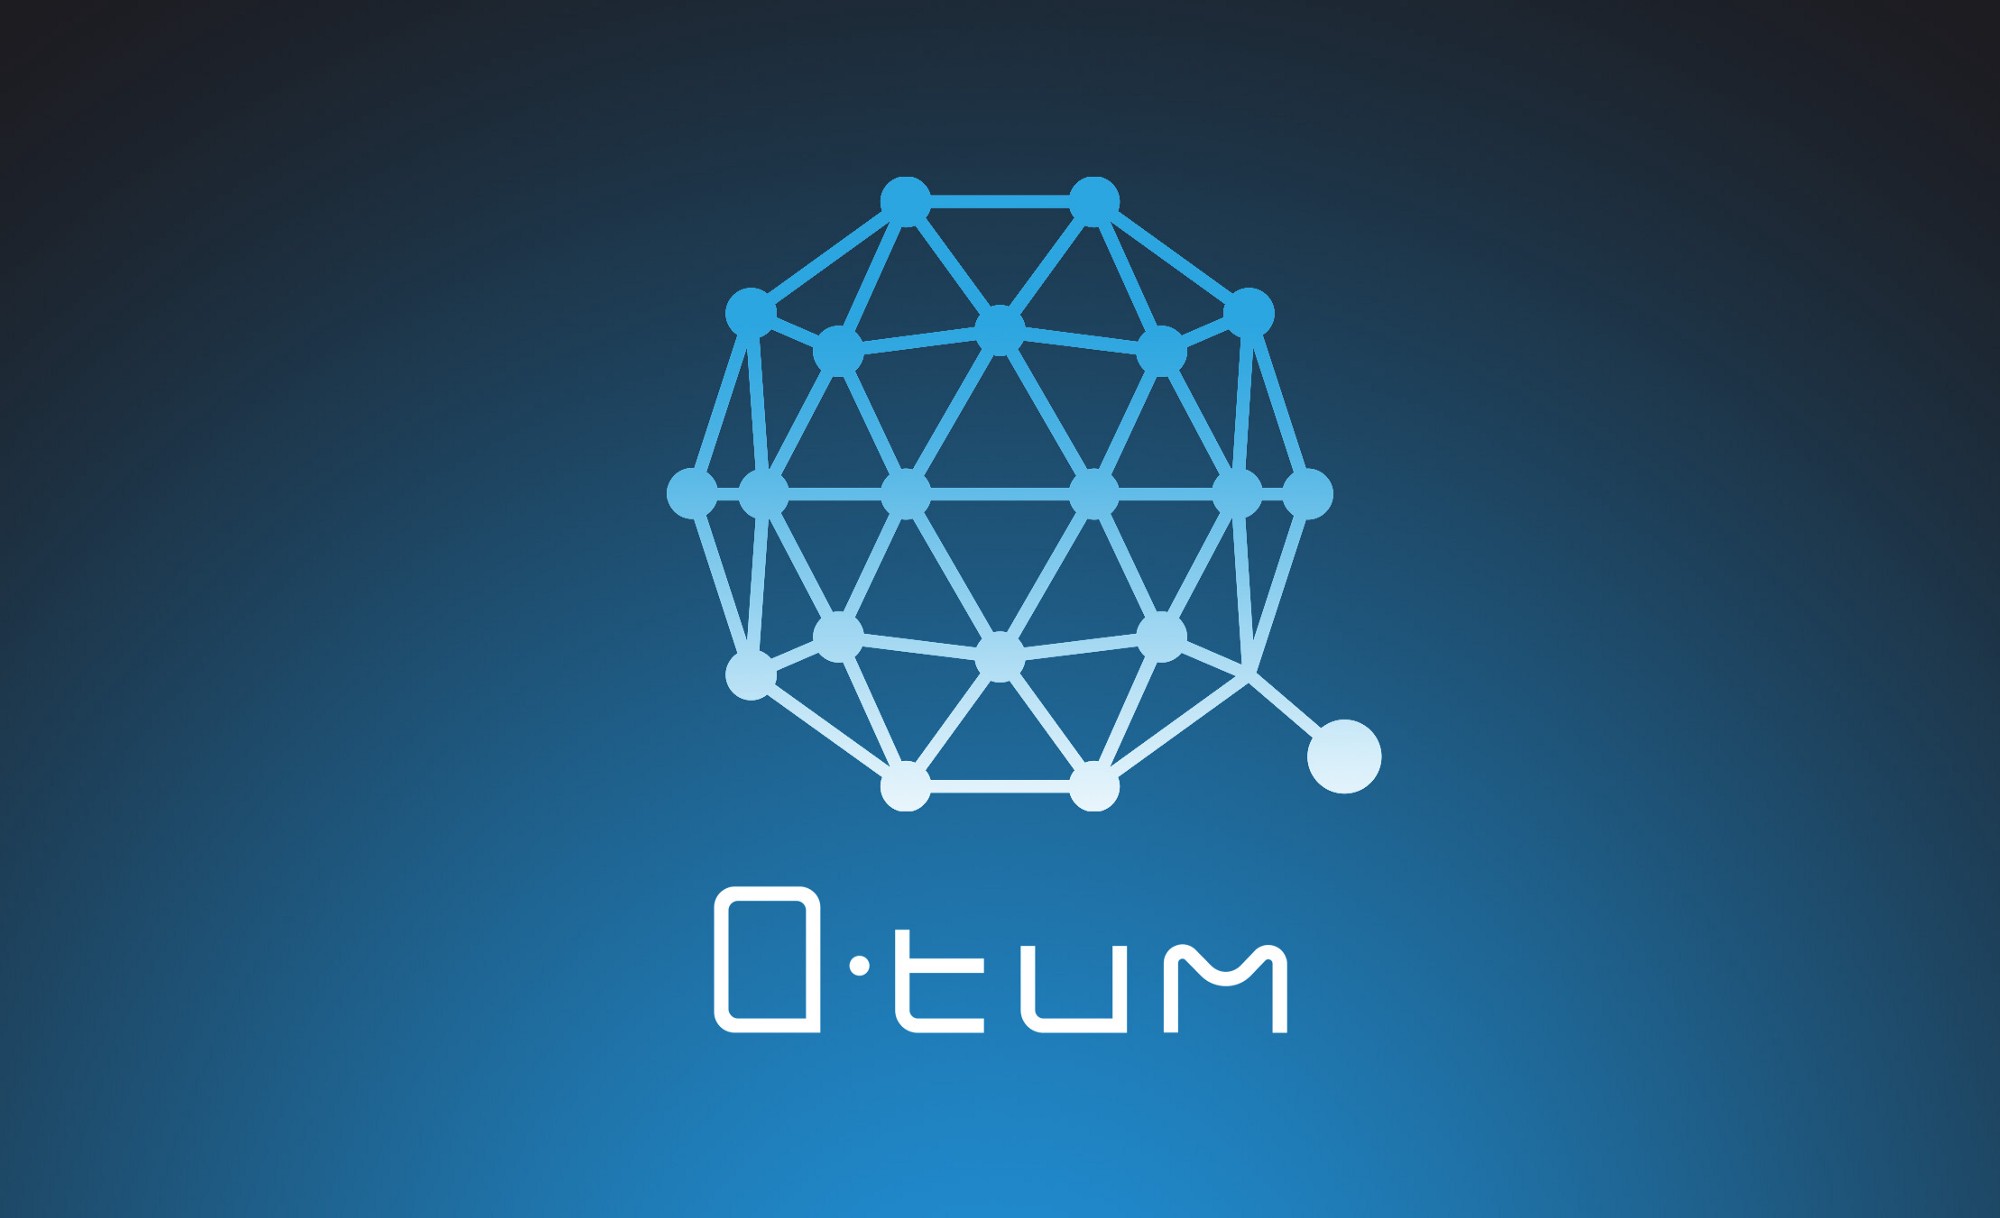 QTUM（クオンタム） 韓国 bithumb